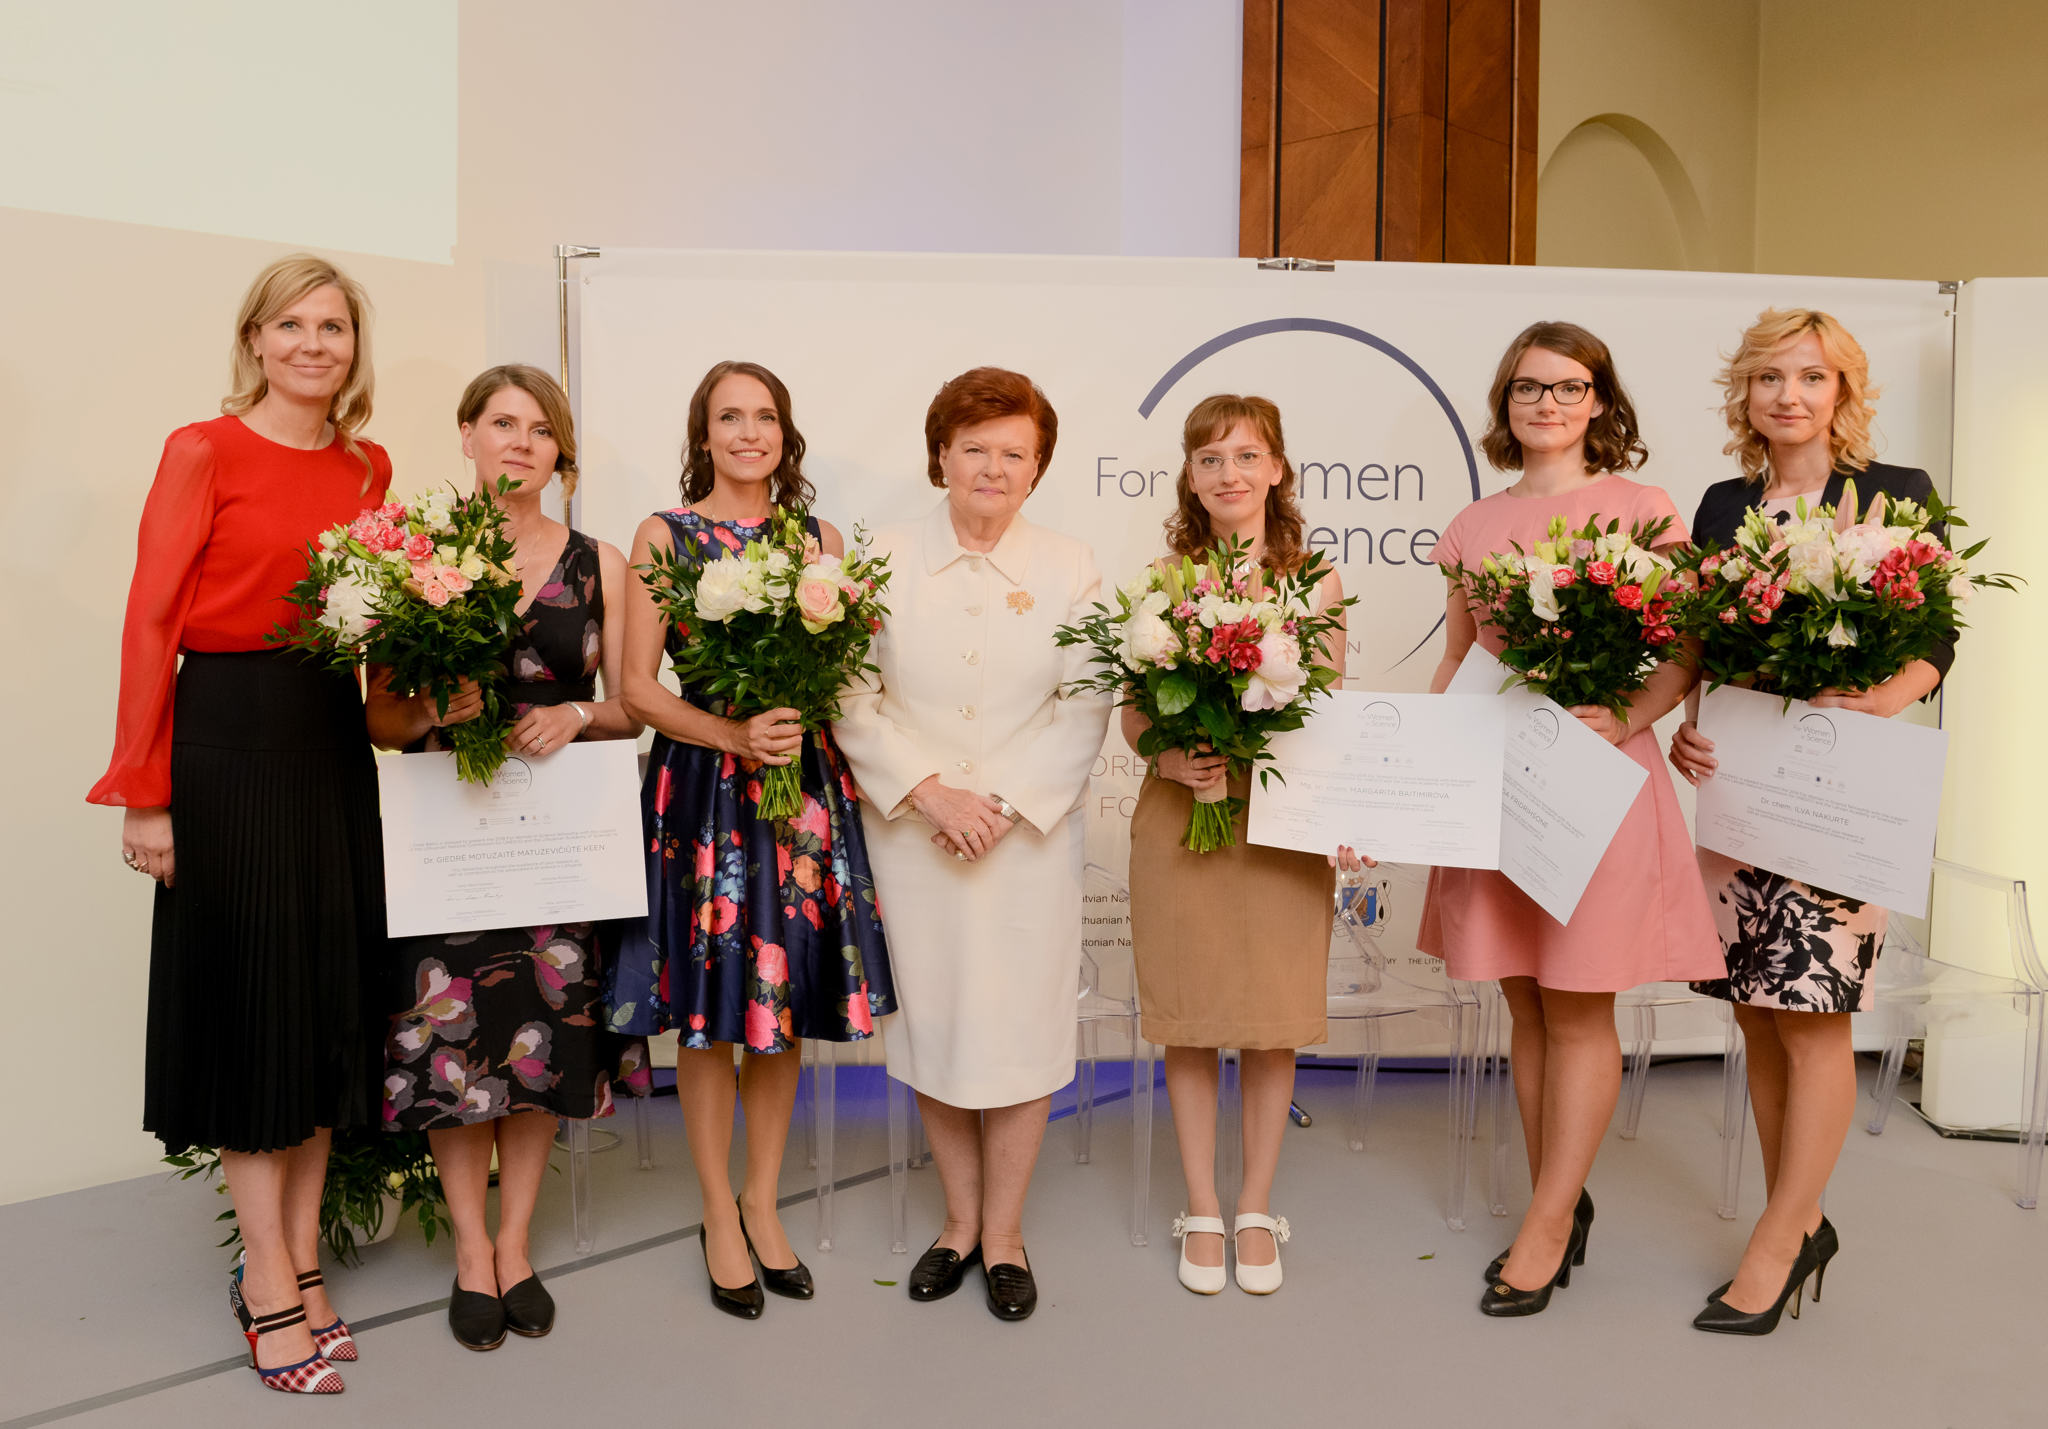 L’Oréali Baltikumi stipendiumiprogrammi Naised teadues tseremoonia Riias, 2018. Foto Janis Salins 